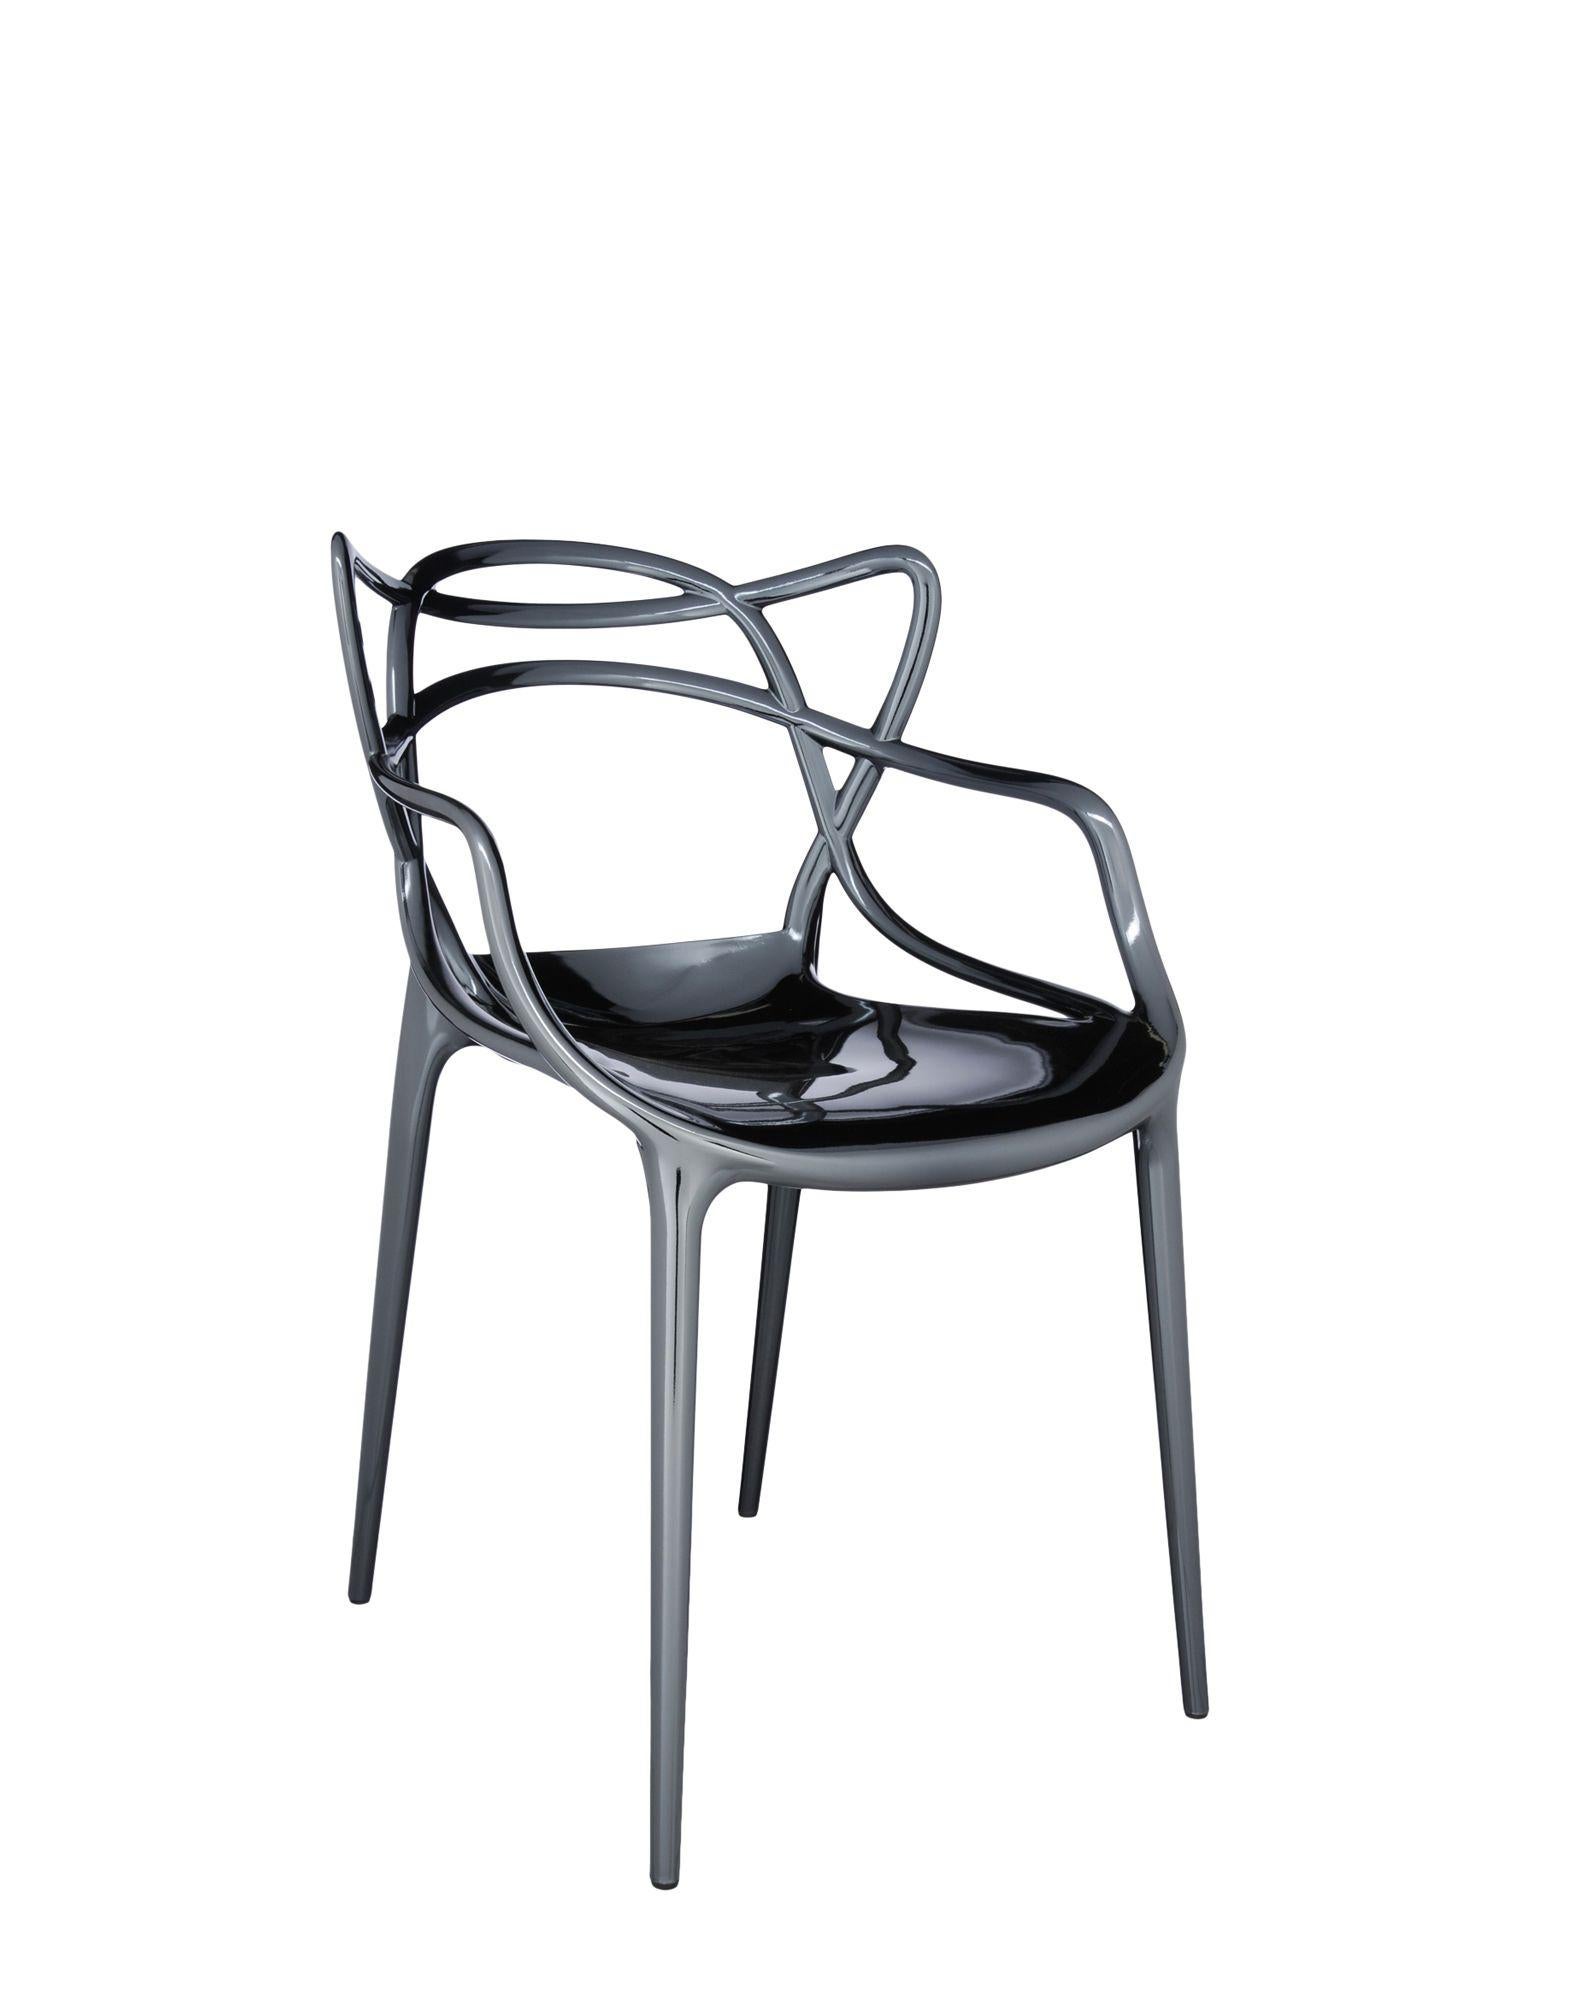 La chaise Masters est un hommage puissant à trois chaises symboliques, relues et réinterprétées par le génie créatif de Starck. Les silhouettes incomparables de la Série 7 d'Arne Jacobsen, du fauteuil Tulip d'Eero Saarinen et de la chaise Eiffel de